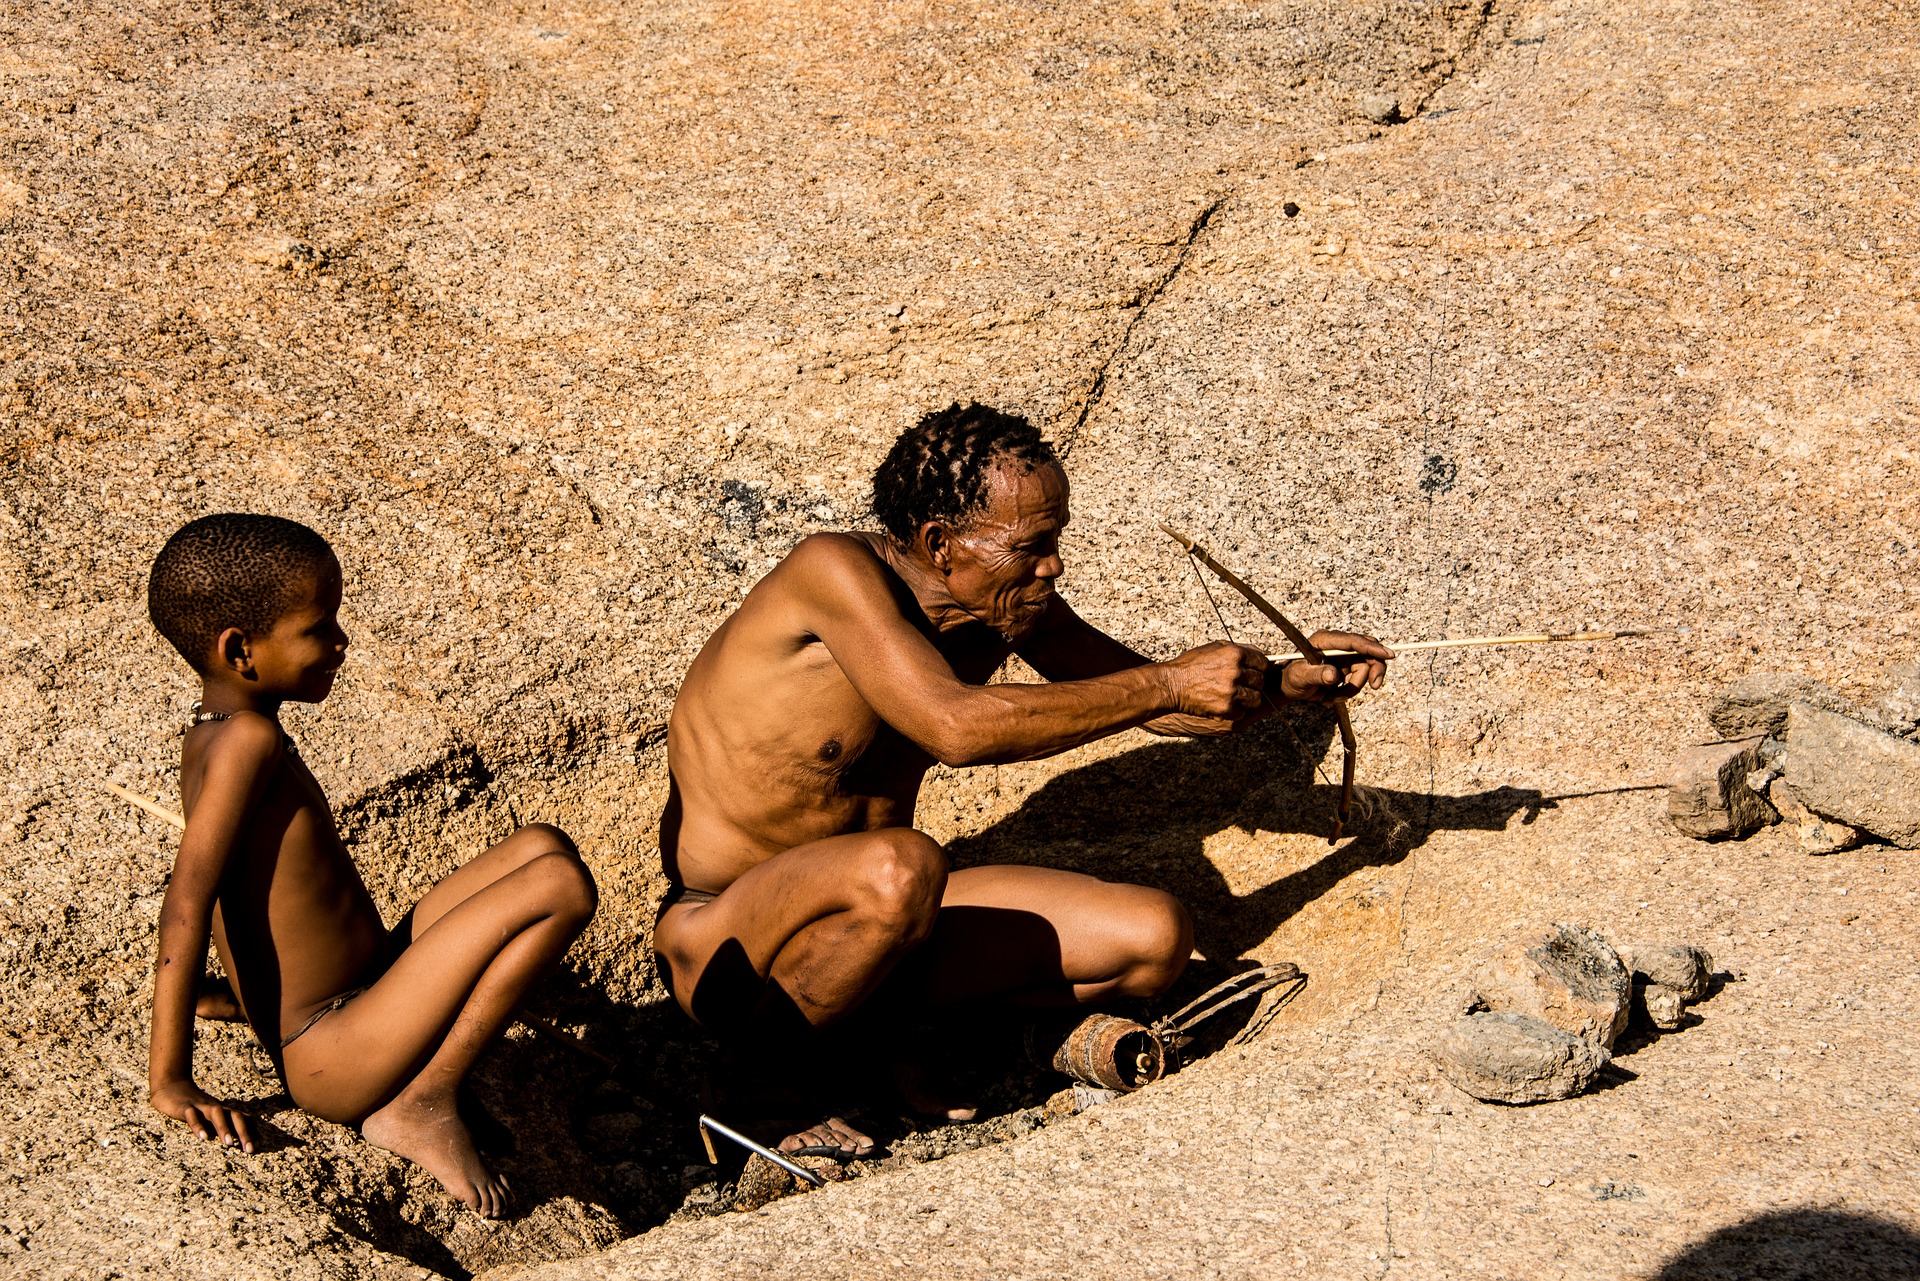 Ein älterer Indianermann im Lendenschurz sitzt auf einem Felsen und hält einen Bogen und Pfeile in den Händen. Neben ihm sitzt ein kleiner Junge und schaut ihn gespannt an. Die Landschaft im Hintergrund ist kahl und öde.